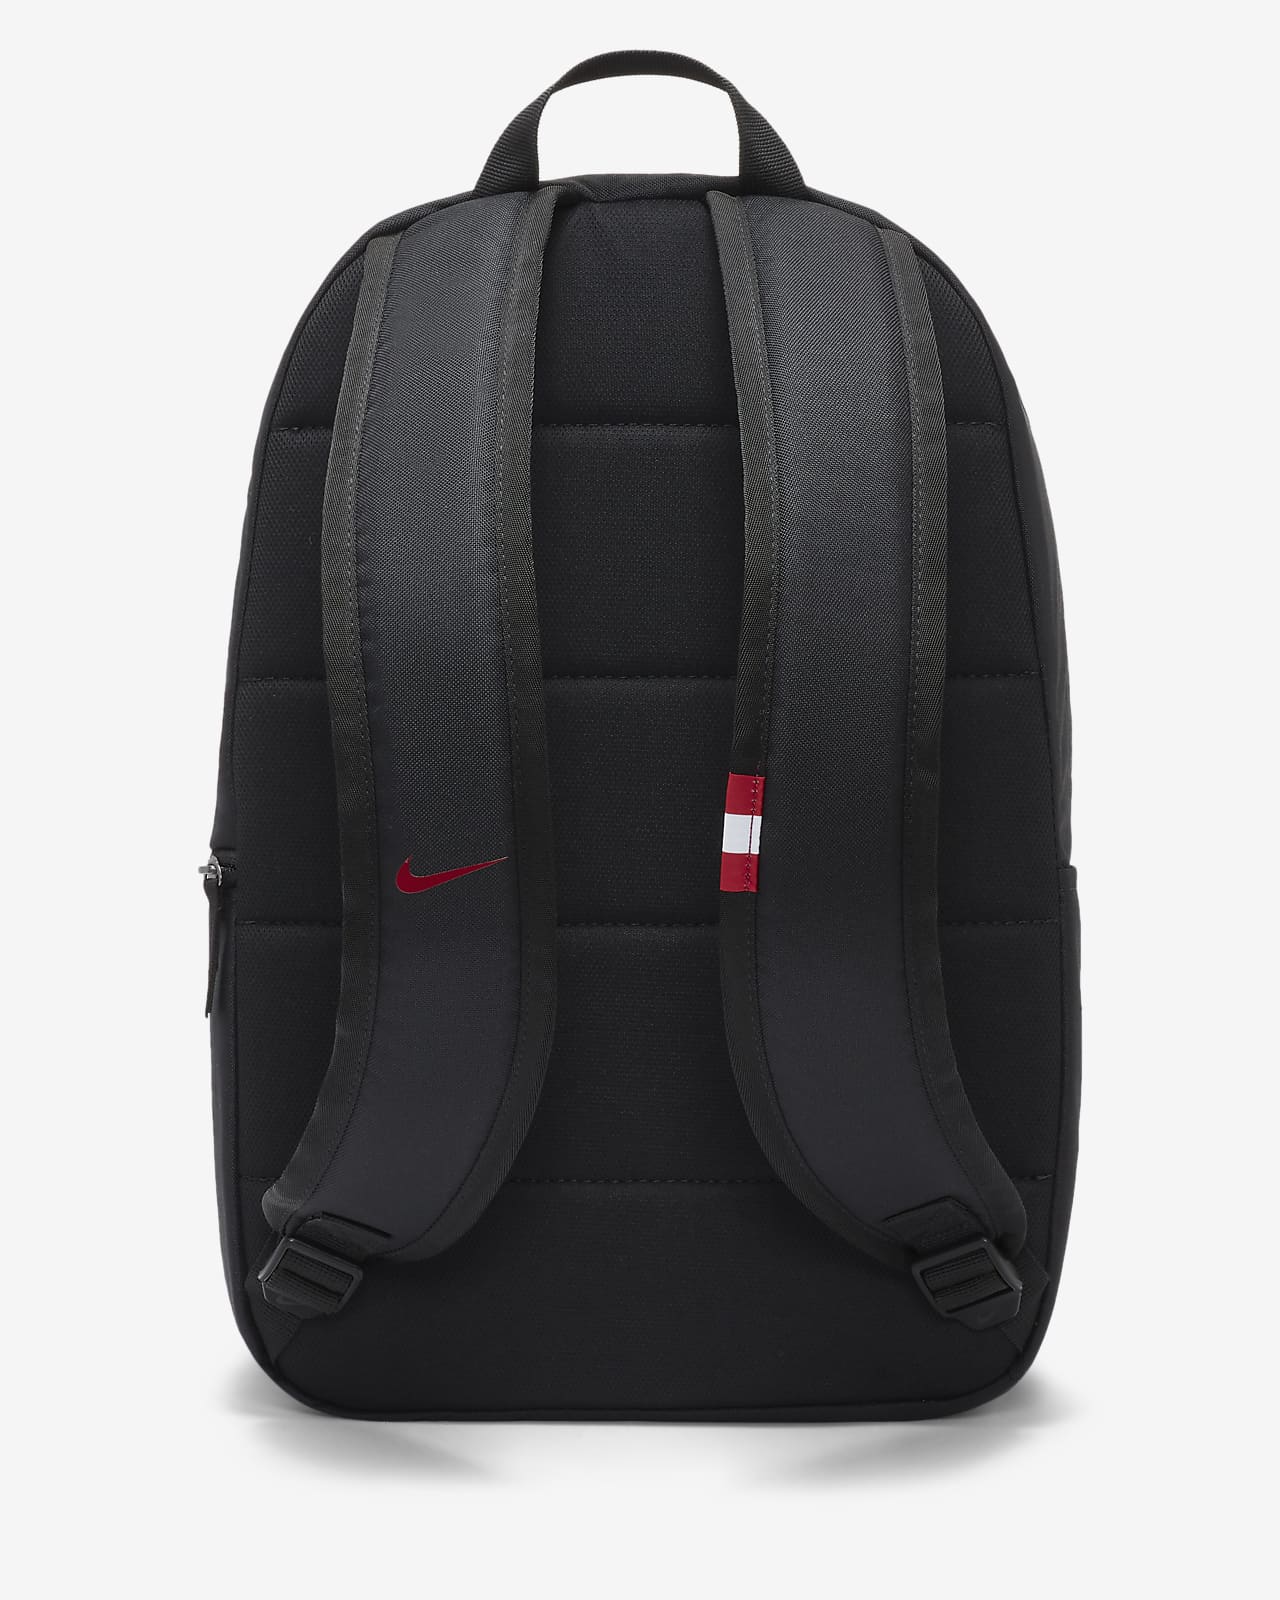 nike soccer backpack black